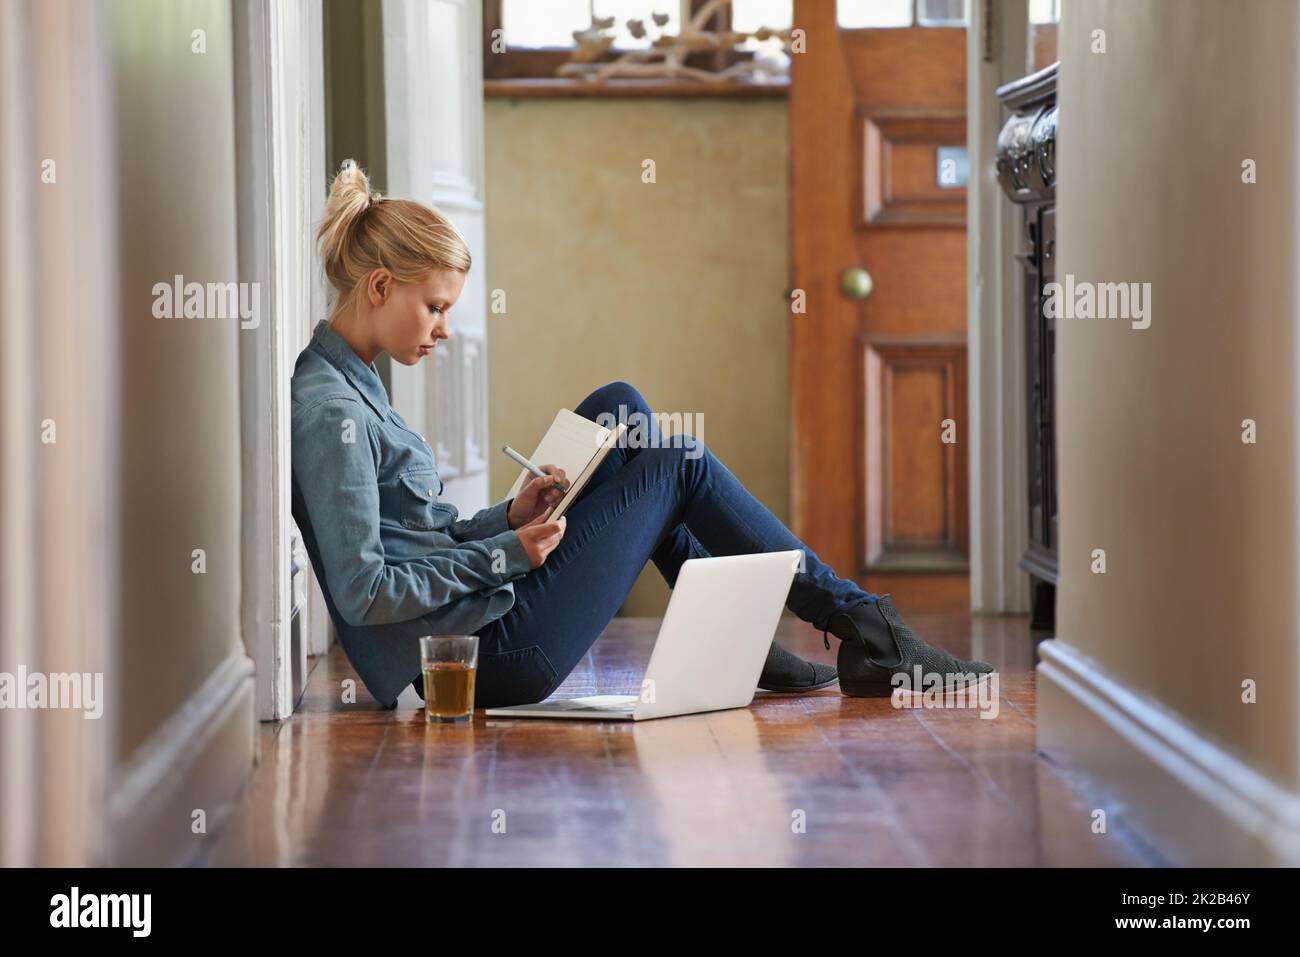 En vous privant de pensées. Une jeune femme assise sur le sol fait des recherches sur son ordinateur portable. Banque D'Images